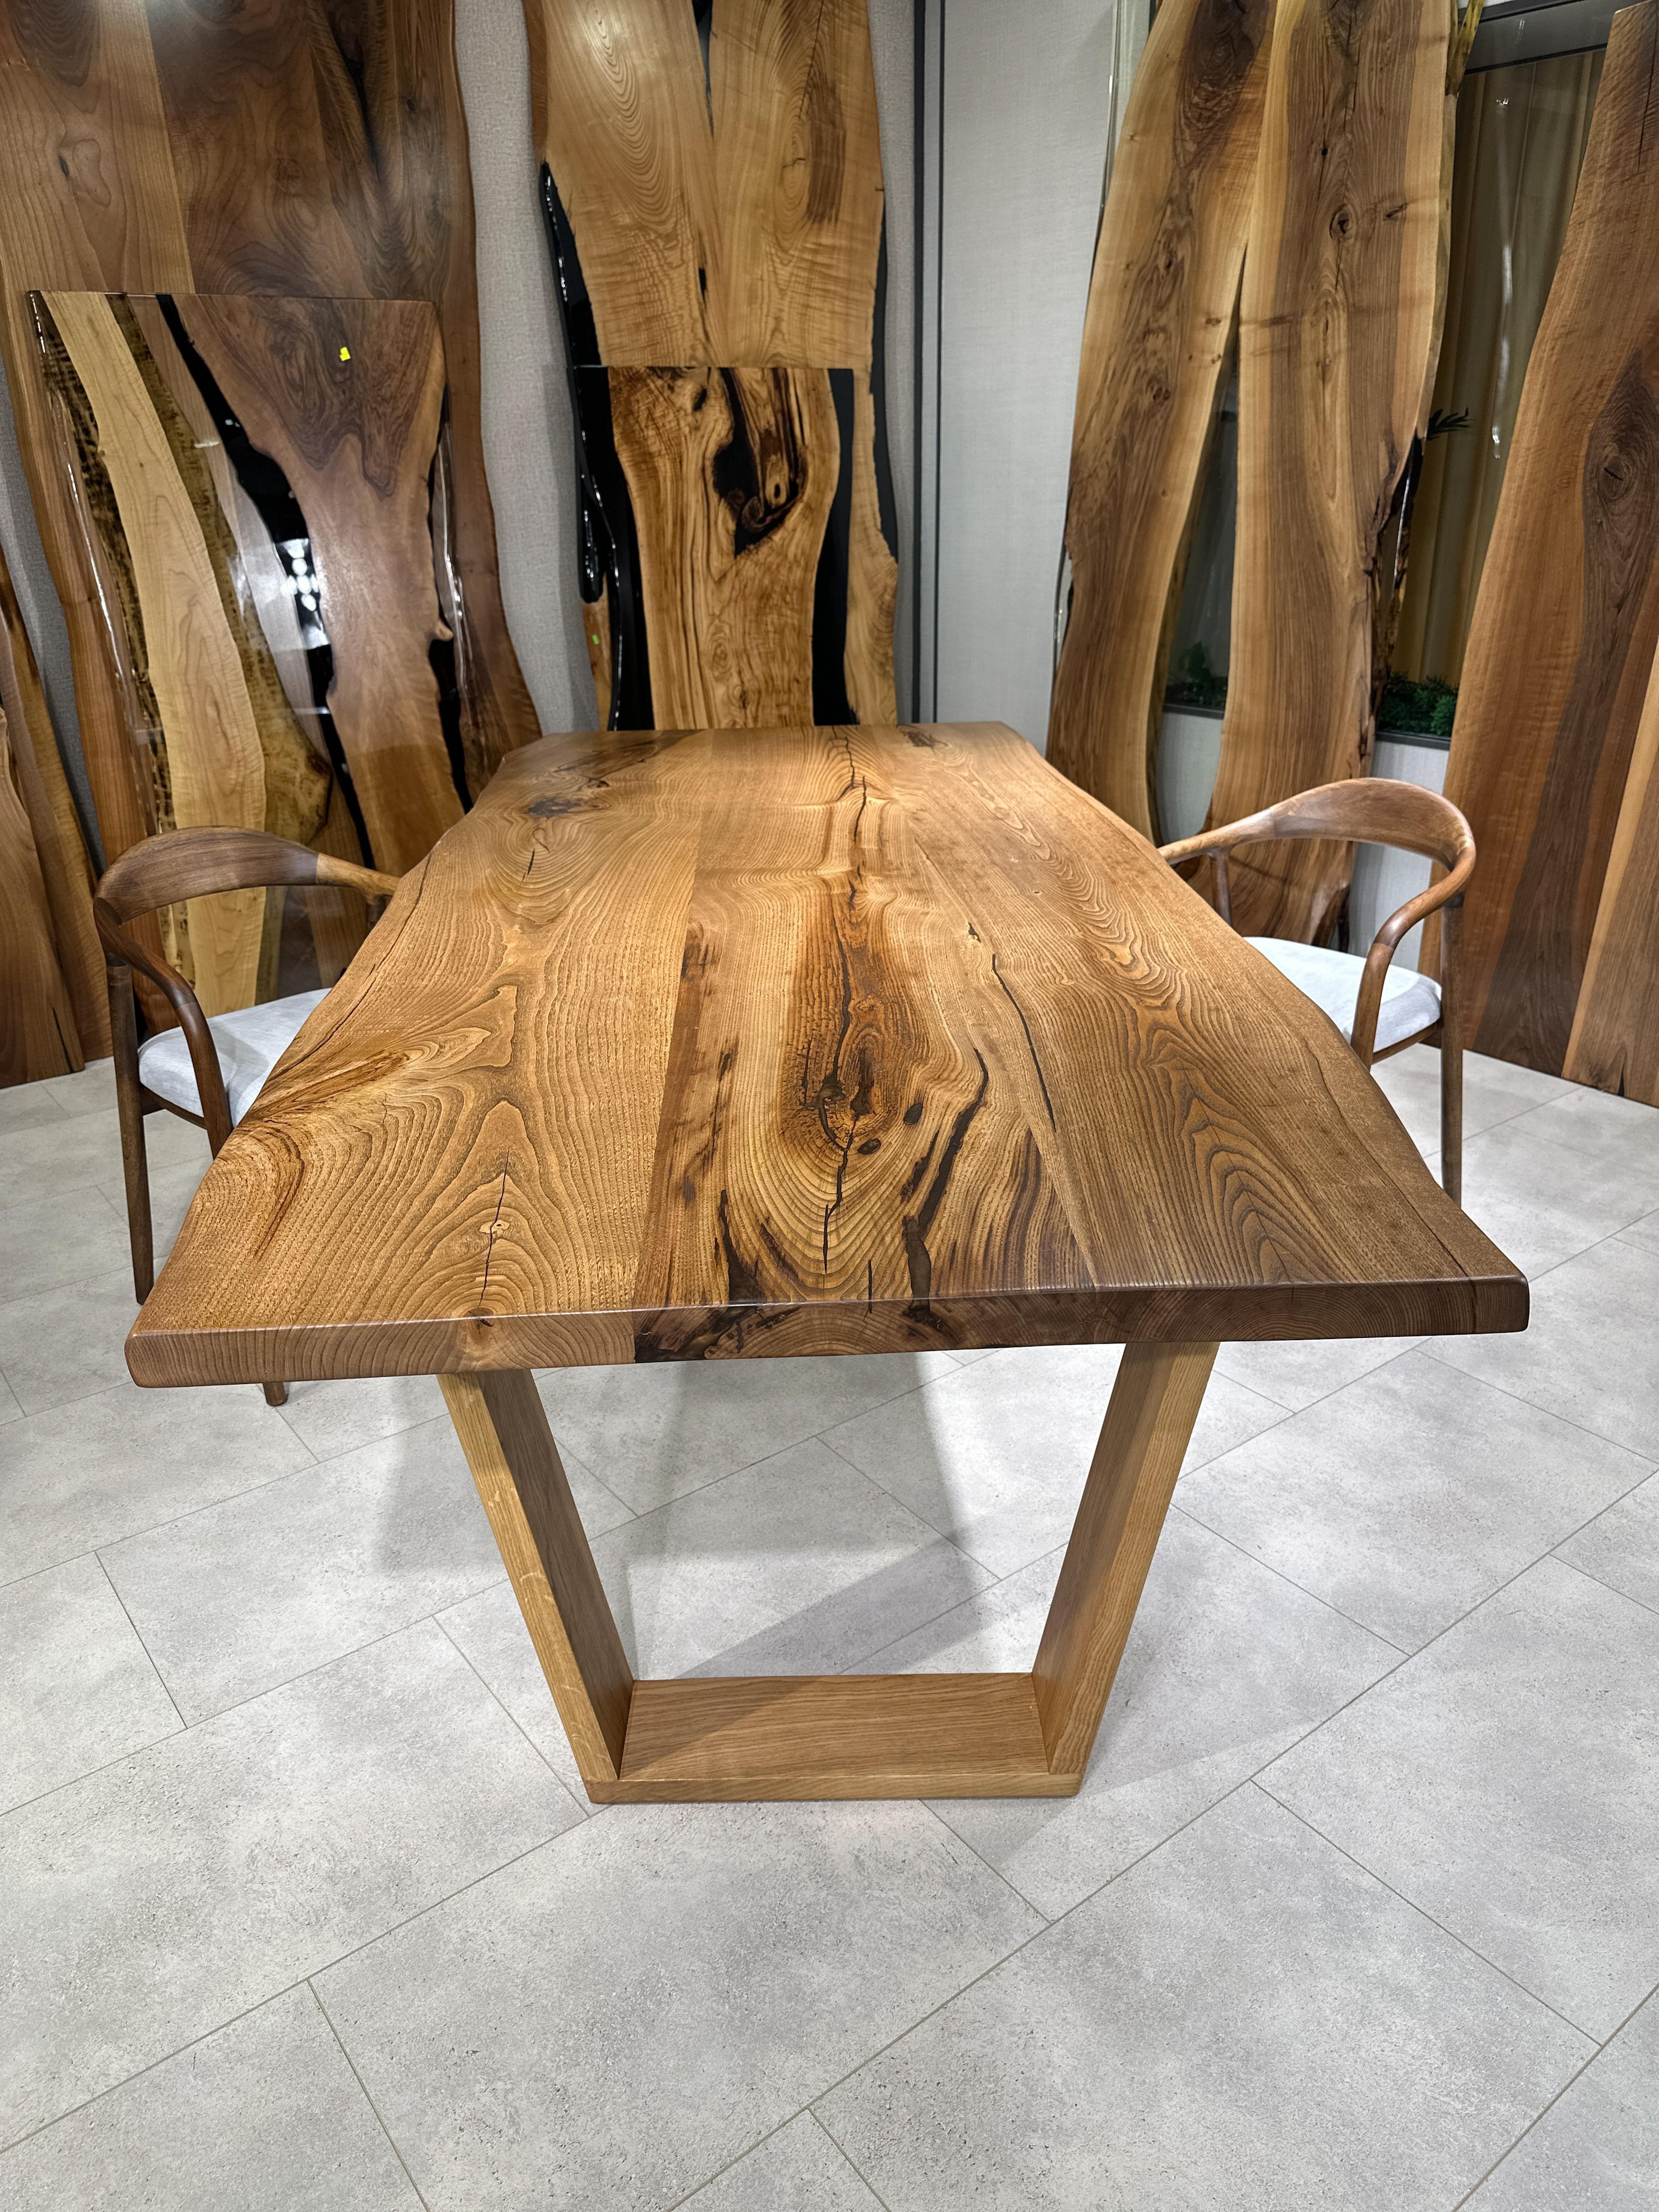 Custom Chesnut Live Edge Esstisch aus Epoxidharz

Dieser Tisch ist aus Walnussholz gefertigt. Die Maserung und die Struktur des Holzes beschreiben, wie ein natürliches Walnussholz aussieht.
Er kann als Esstisch oder als Konferenztisch verwendet